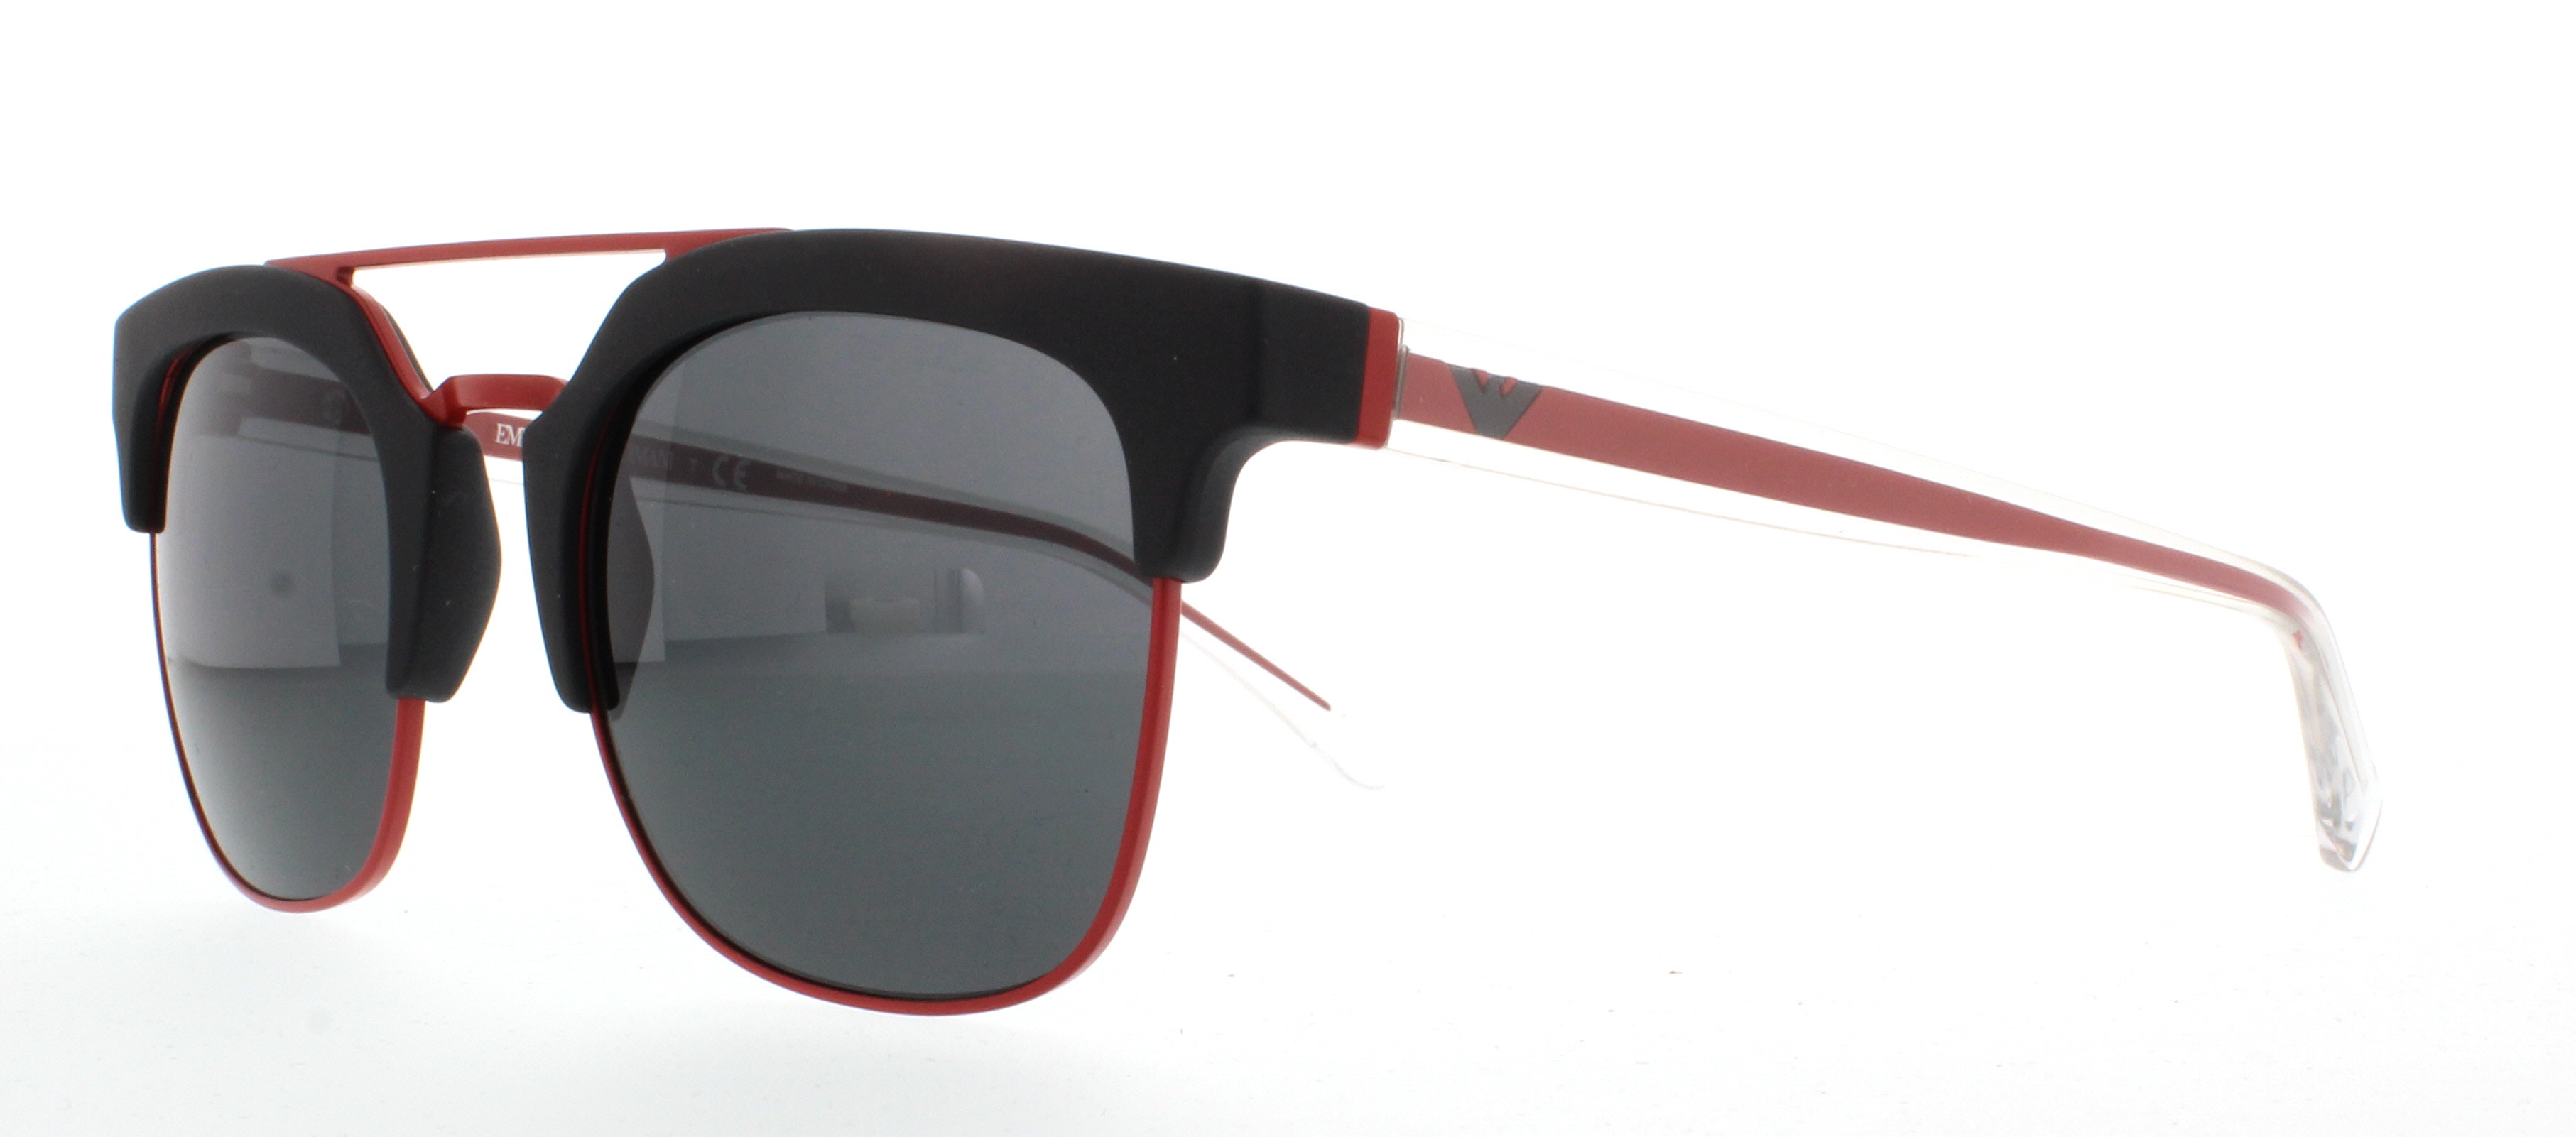 Picture of Emporio Armani Sunglasses EA4093